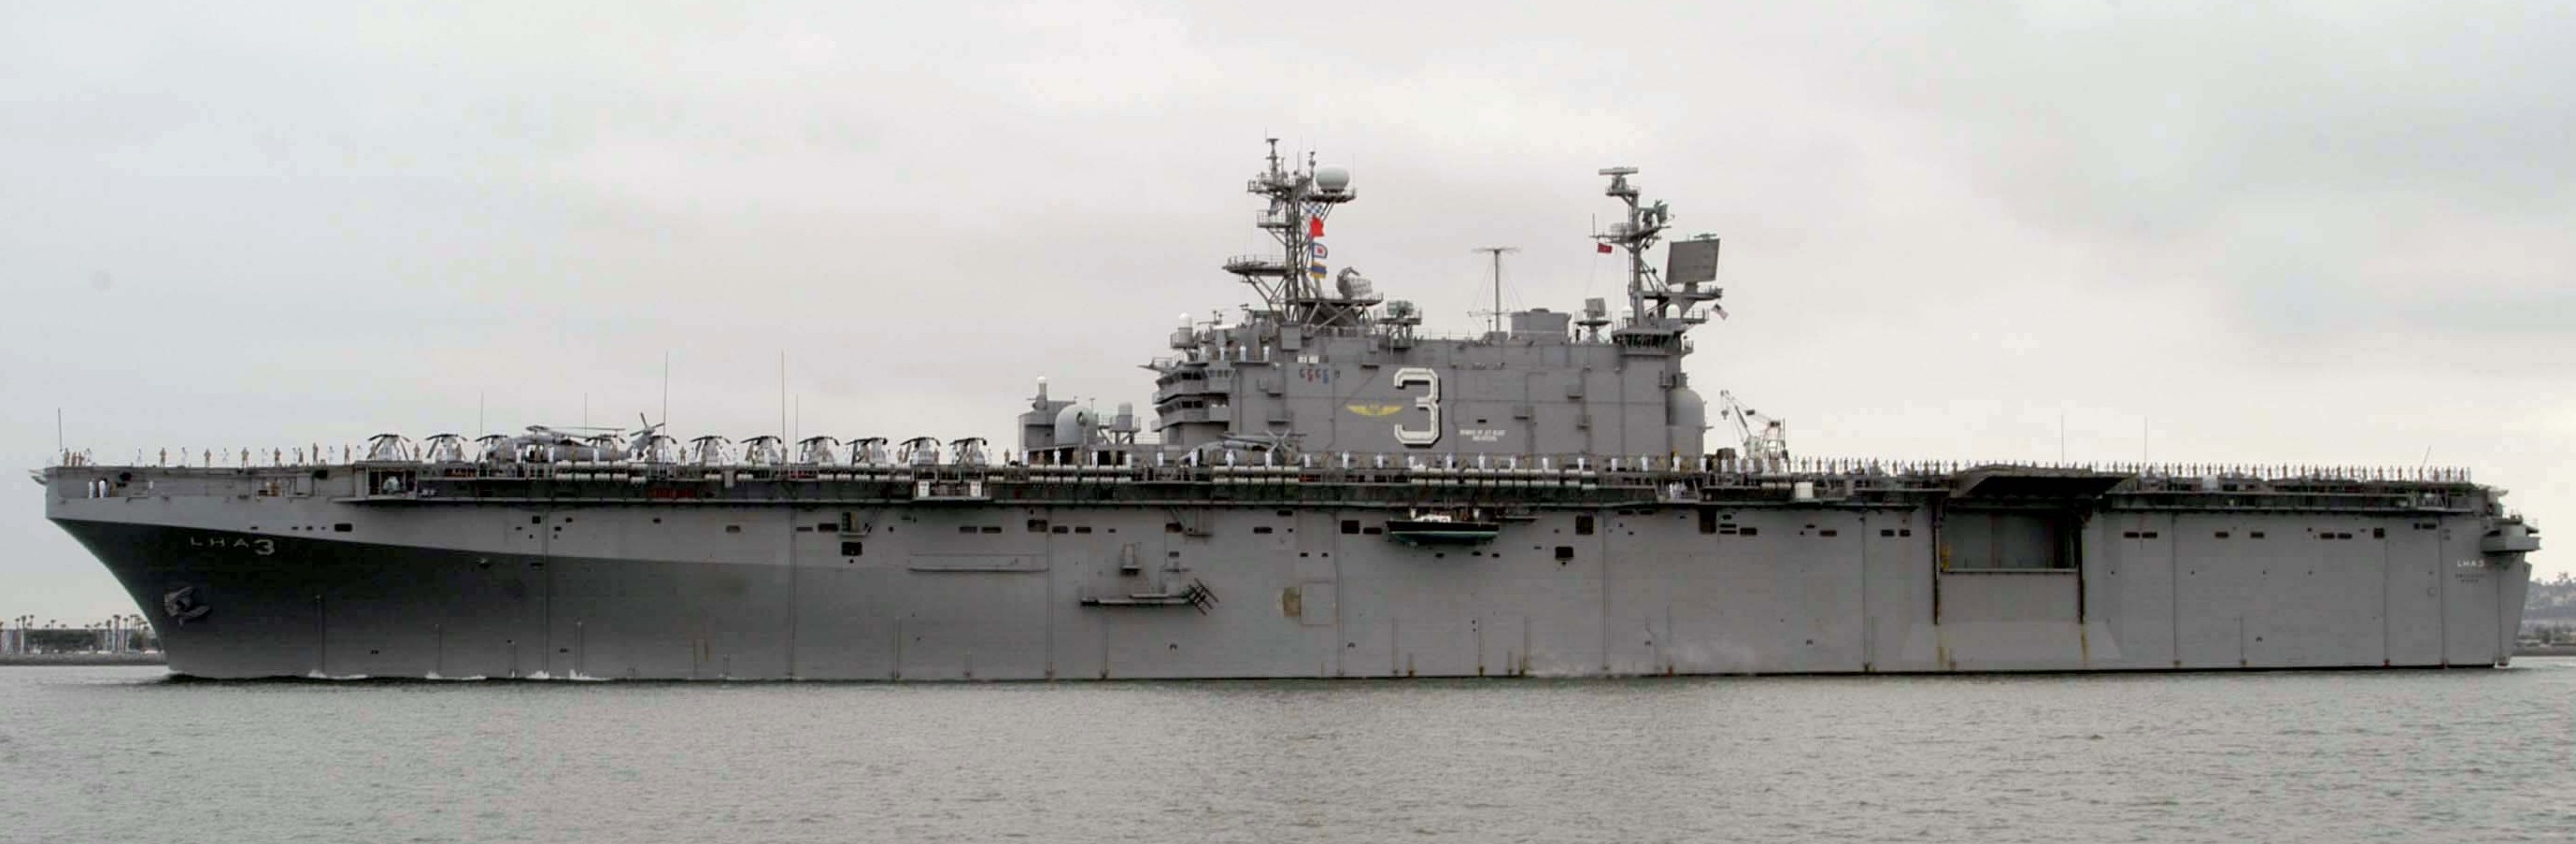 lha-3 uss belleau wood tarawa class amphibious assault ship us navy 05